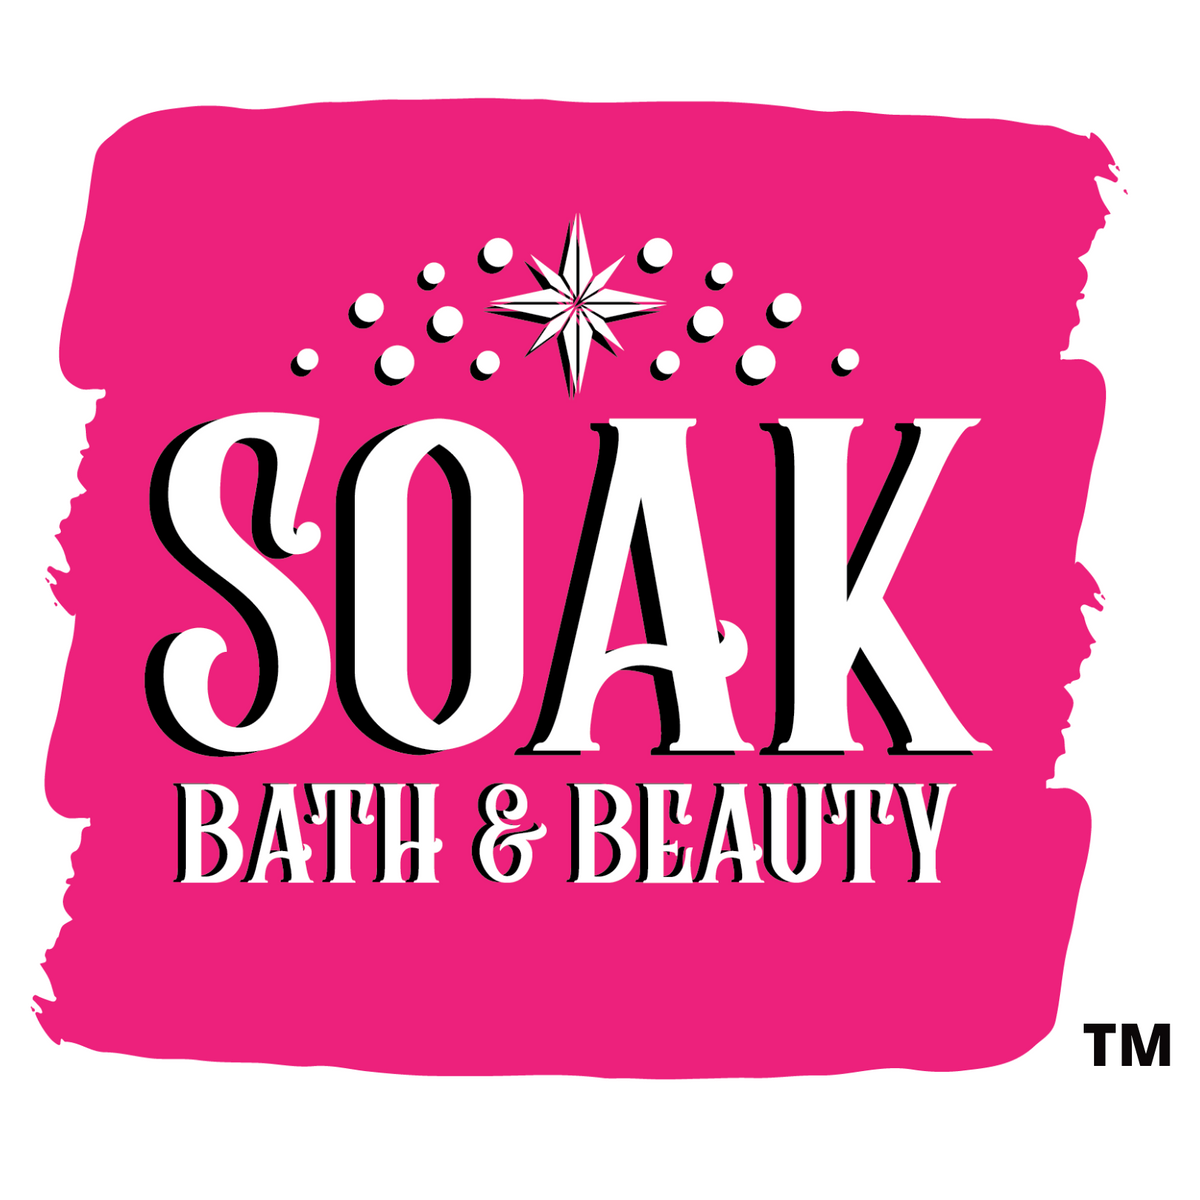 SOAK Bath & Beauty